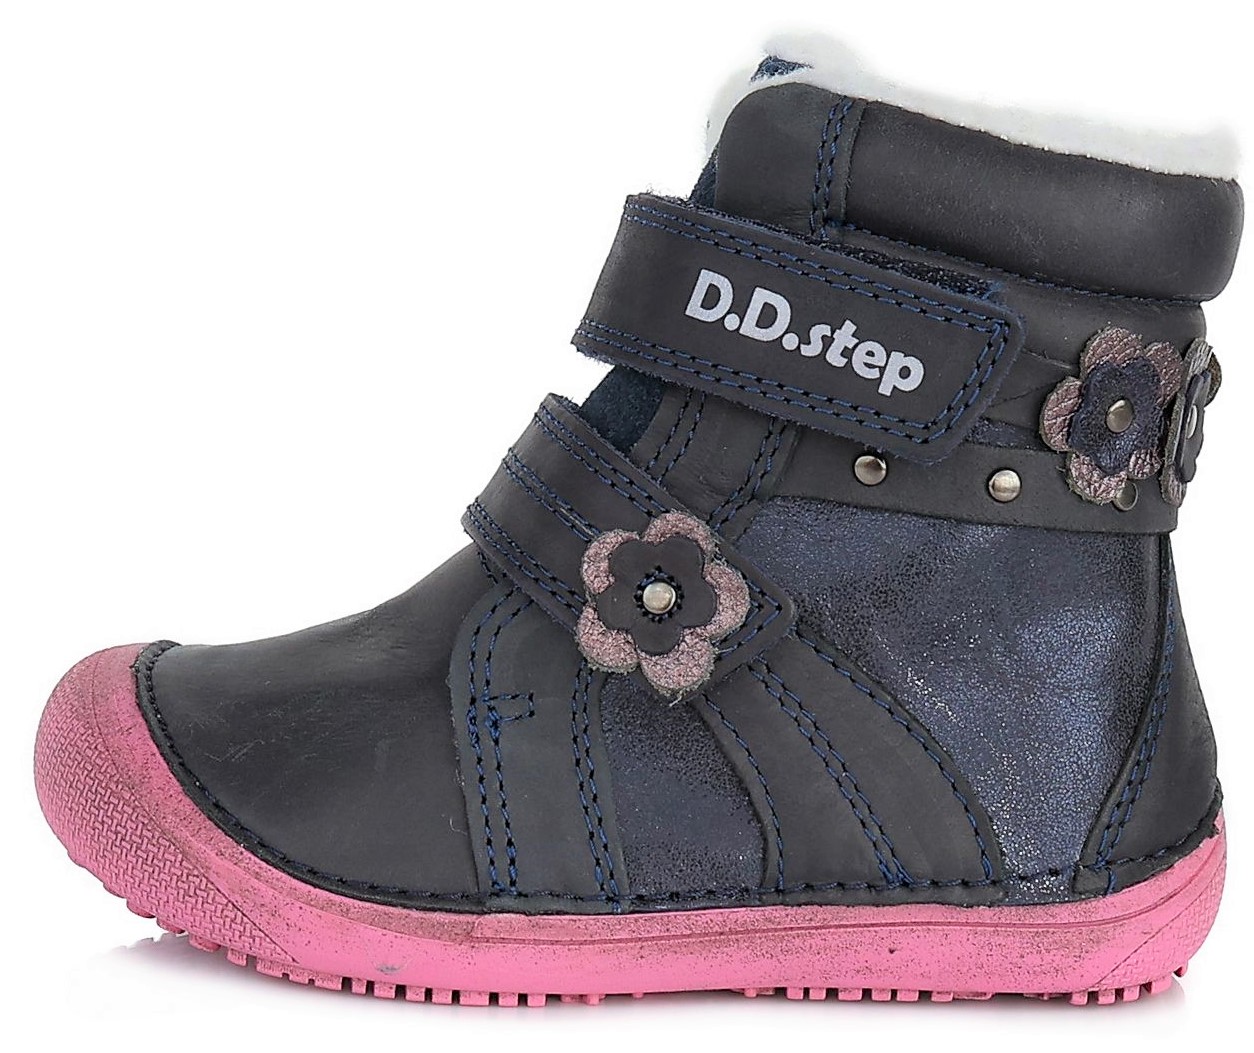 Barefoot zimní boty D.D.step W063-580 modré Velikost: 33 (EU)